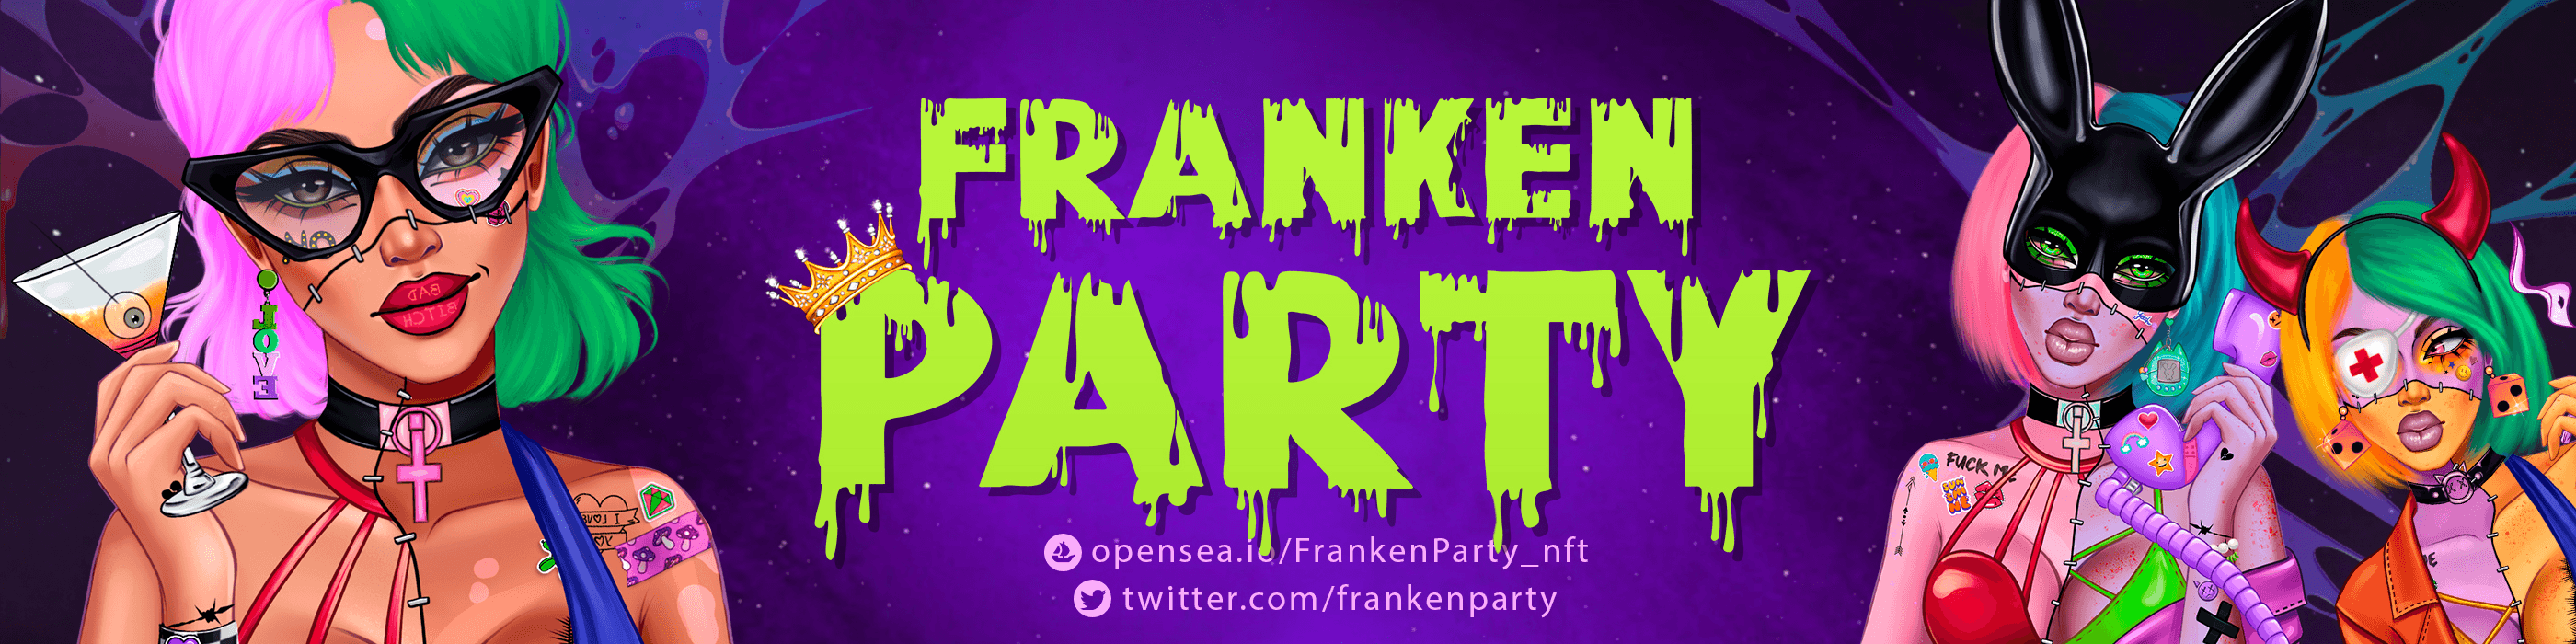 FrankenParty_nft banner